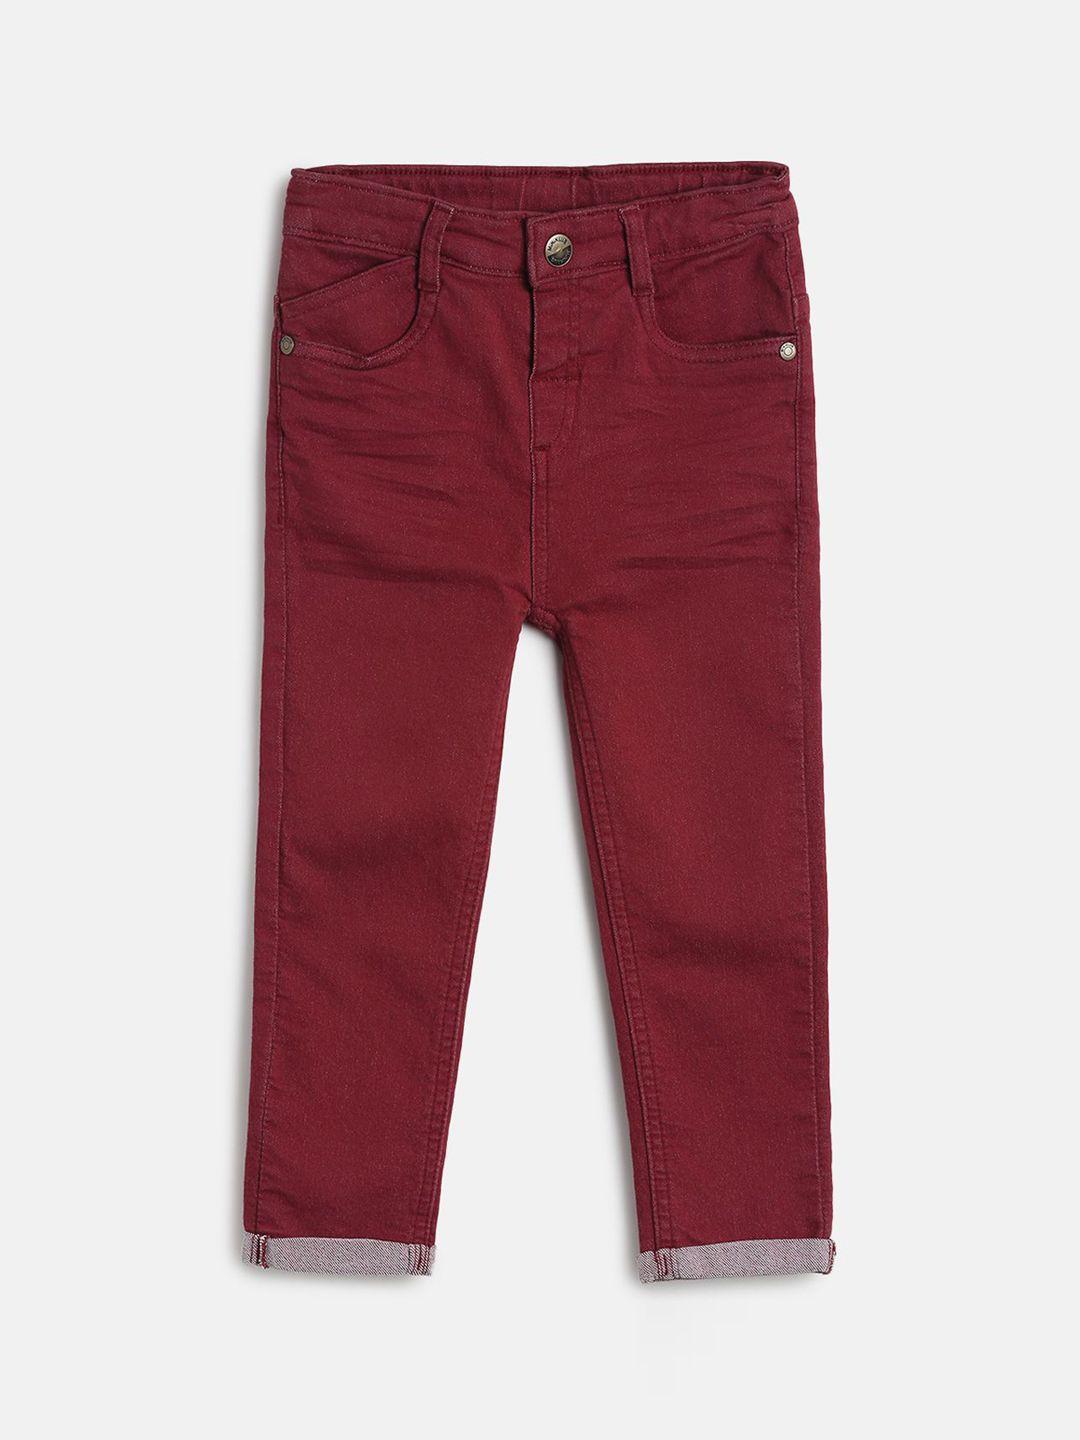 mini-klub-boys-red-denim-jeans